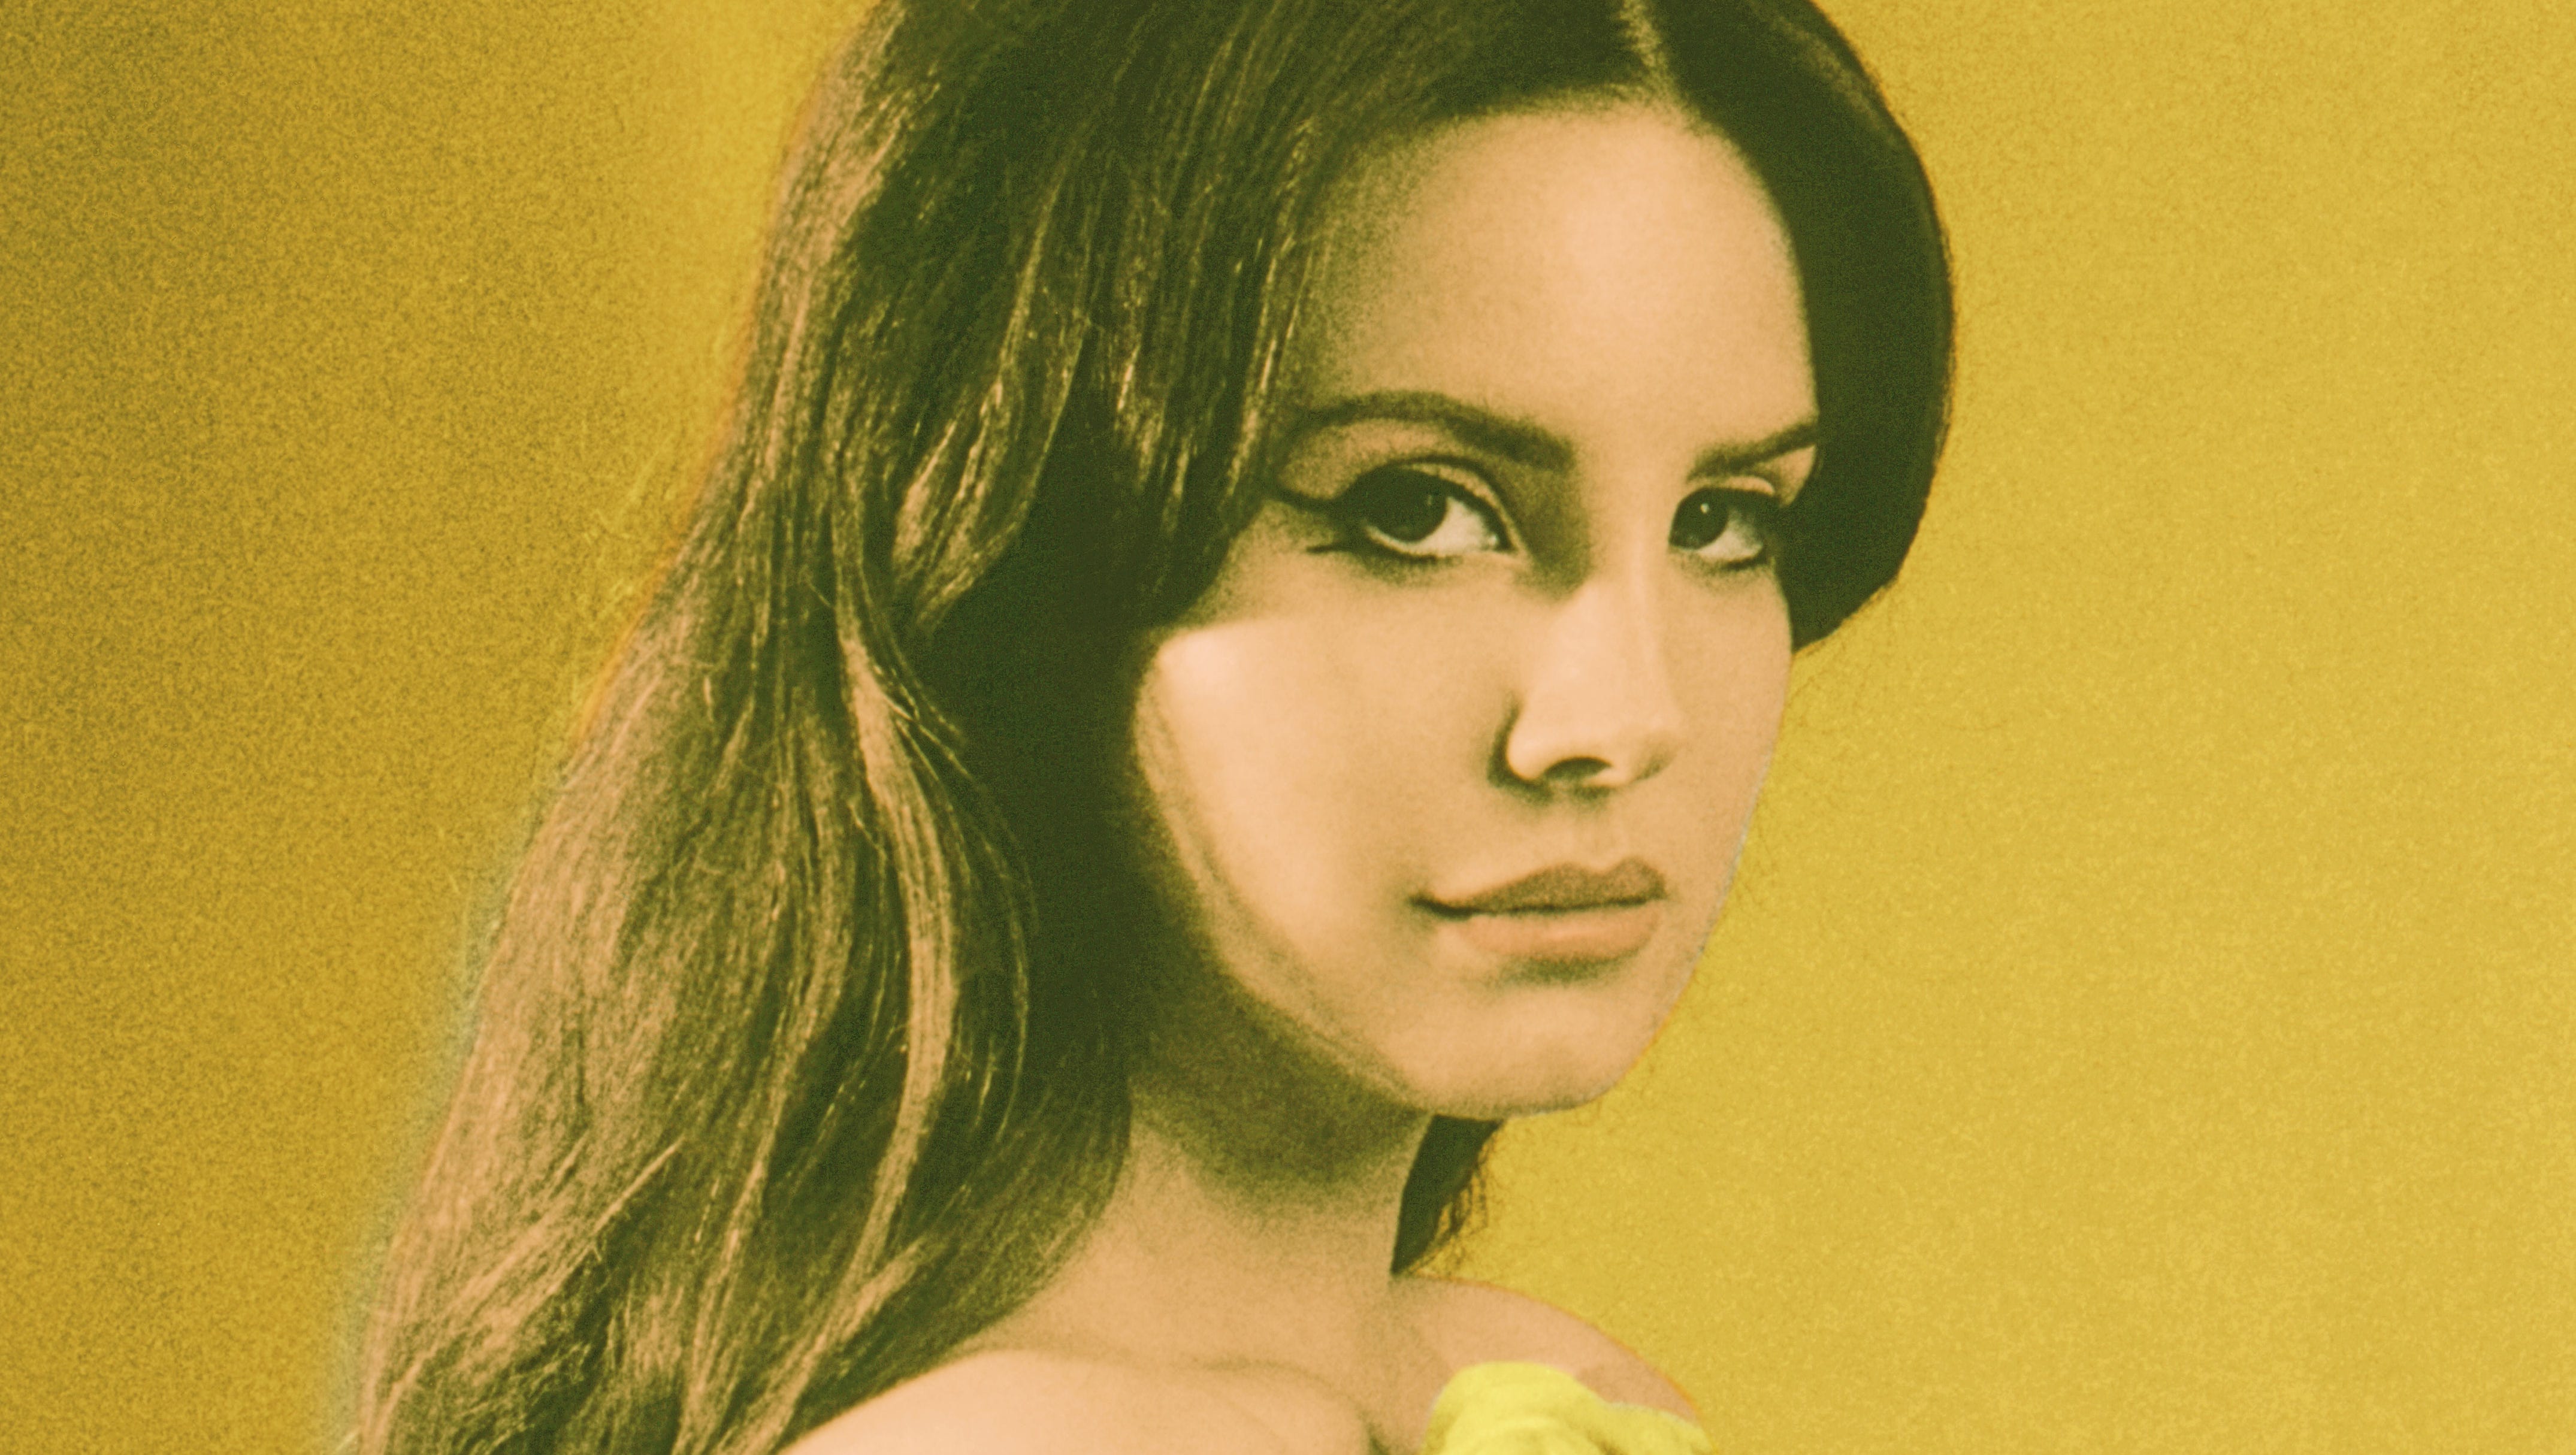 Lana Del Rey beguiles in 'Honeymoon' phase